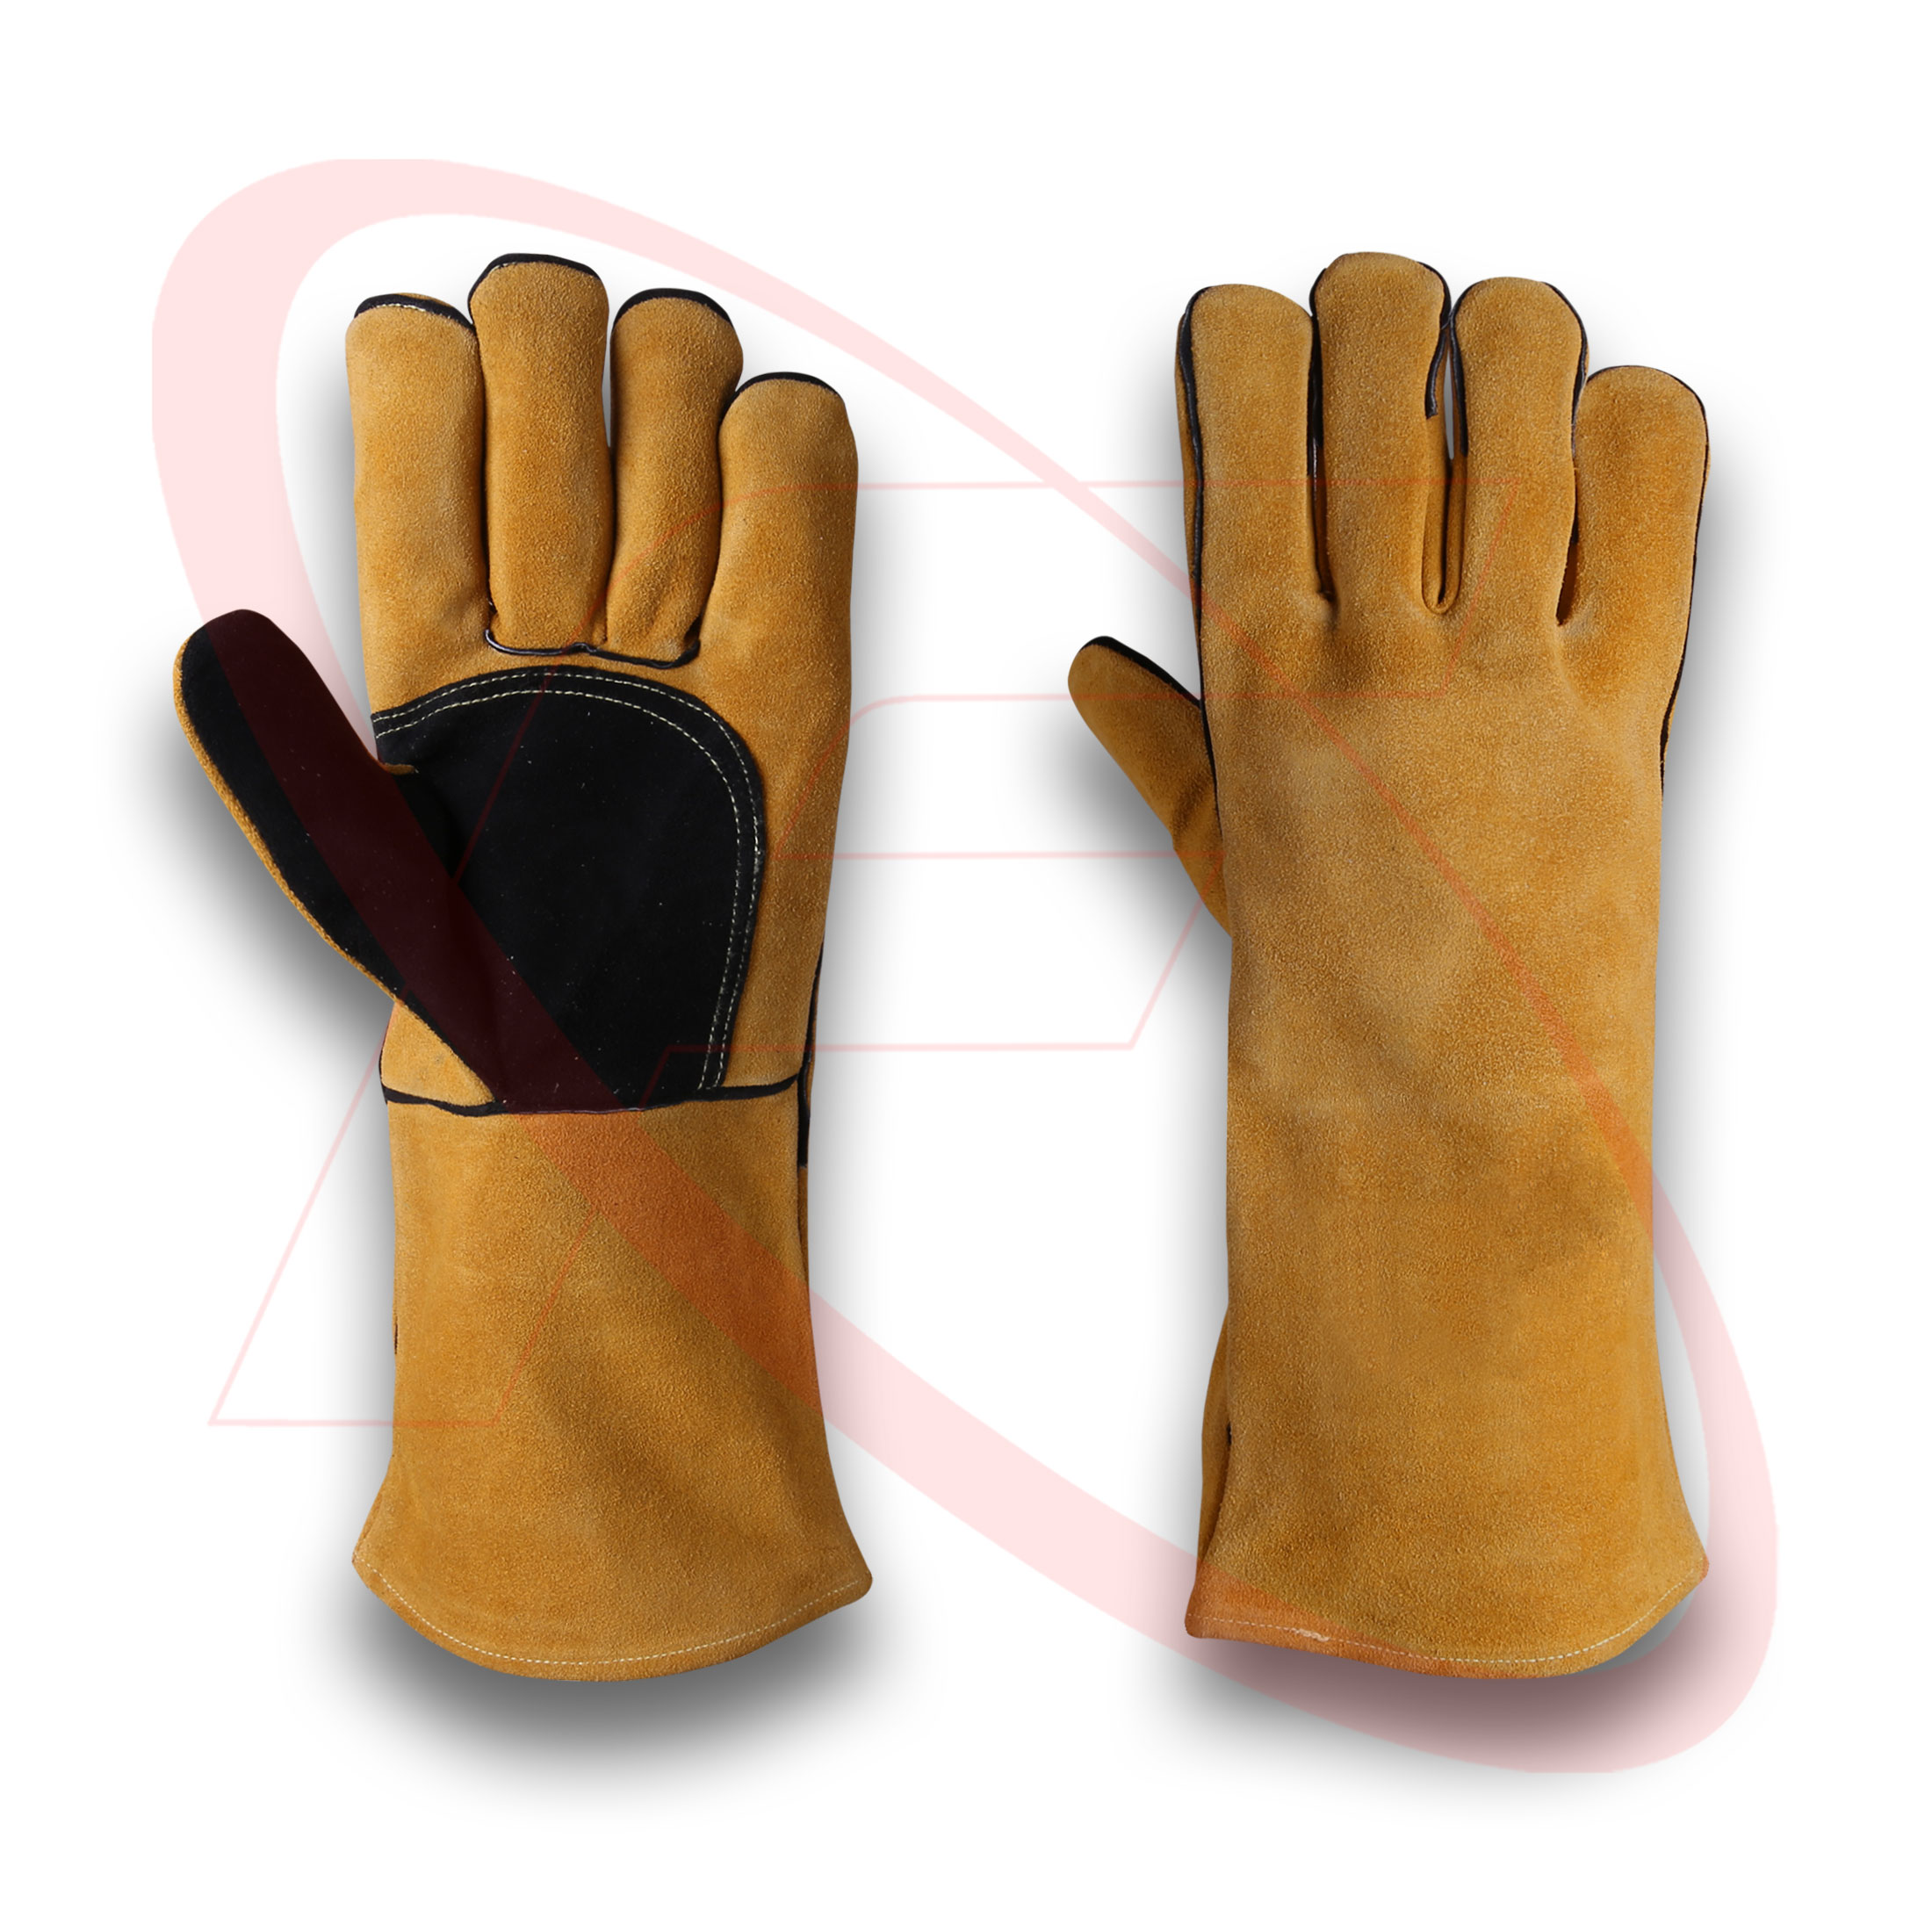 Welding Gloves For Welders Cowhide Split Leather Welder Working Gloves Best Welder Gloves